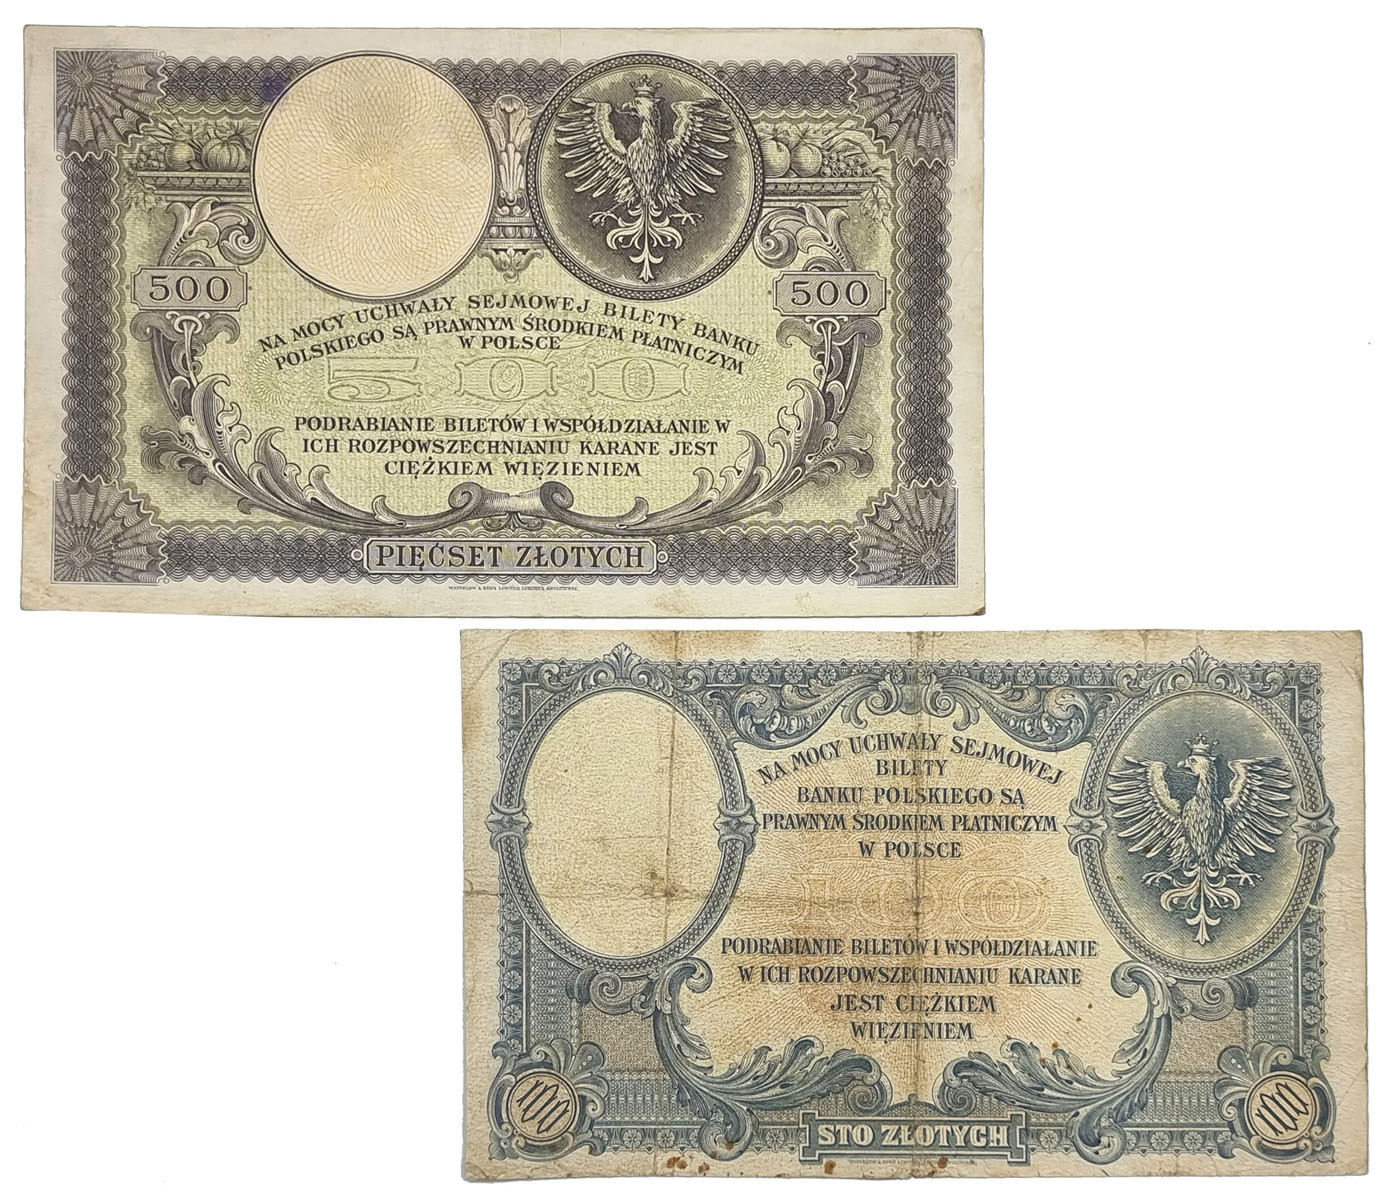 100 złotych 1919 seria B i 500 złotych 1919 seria A